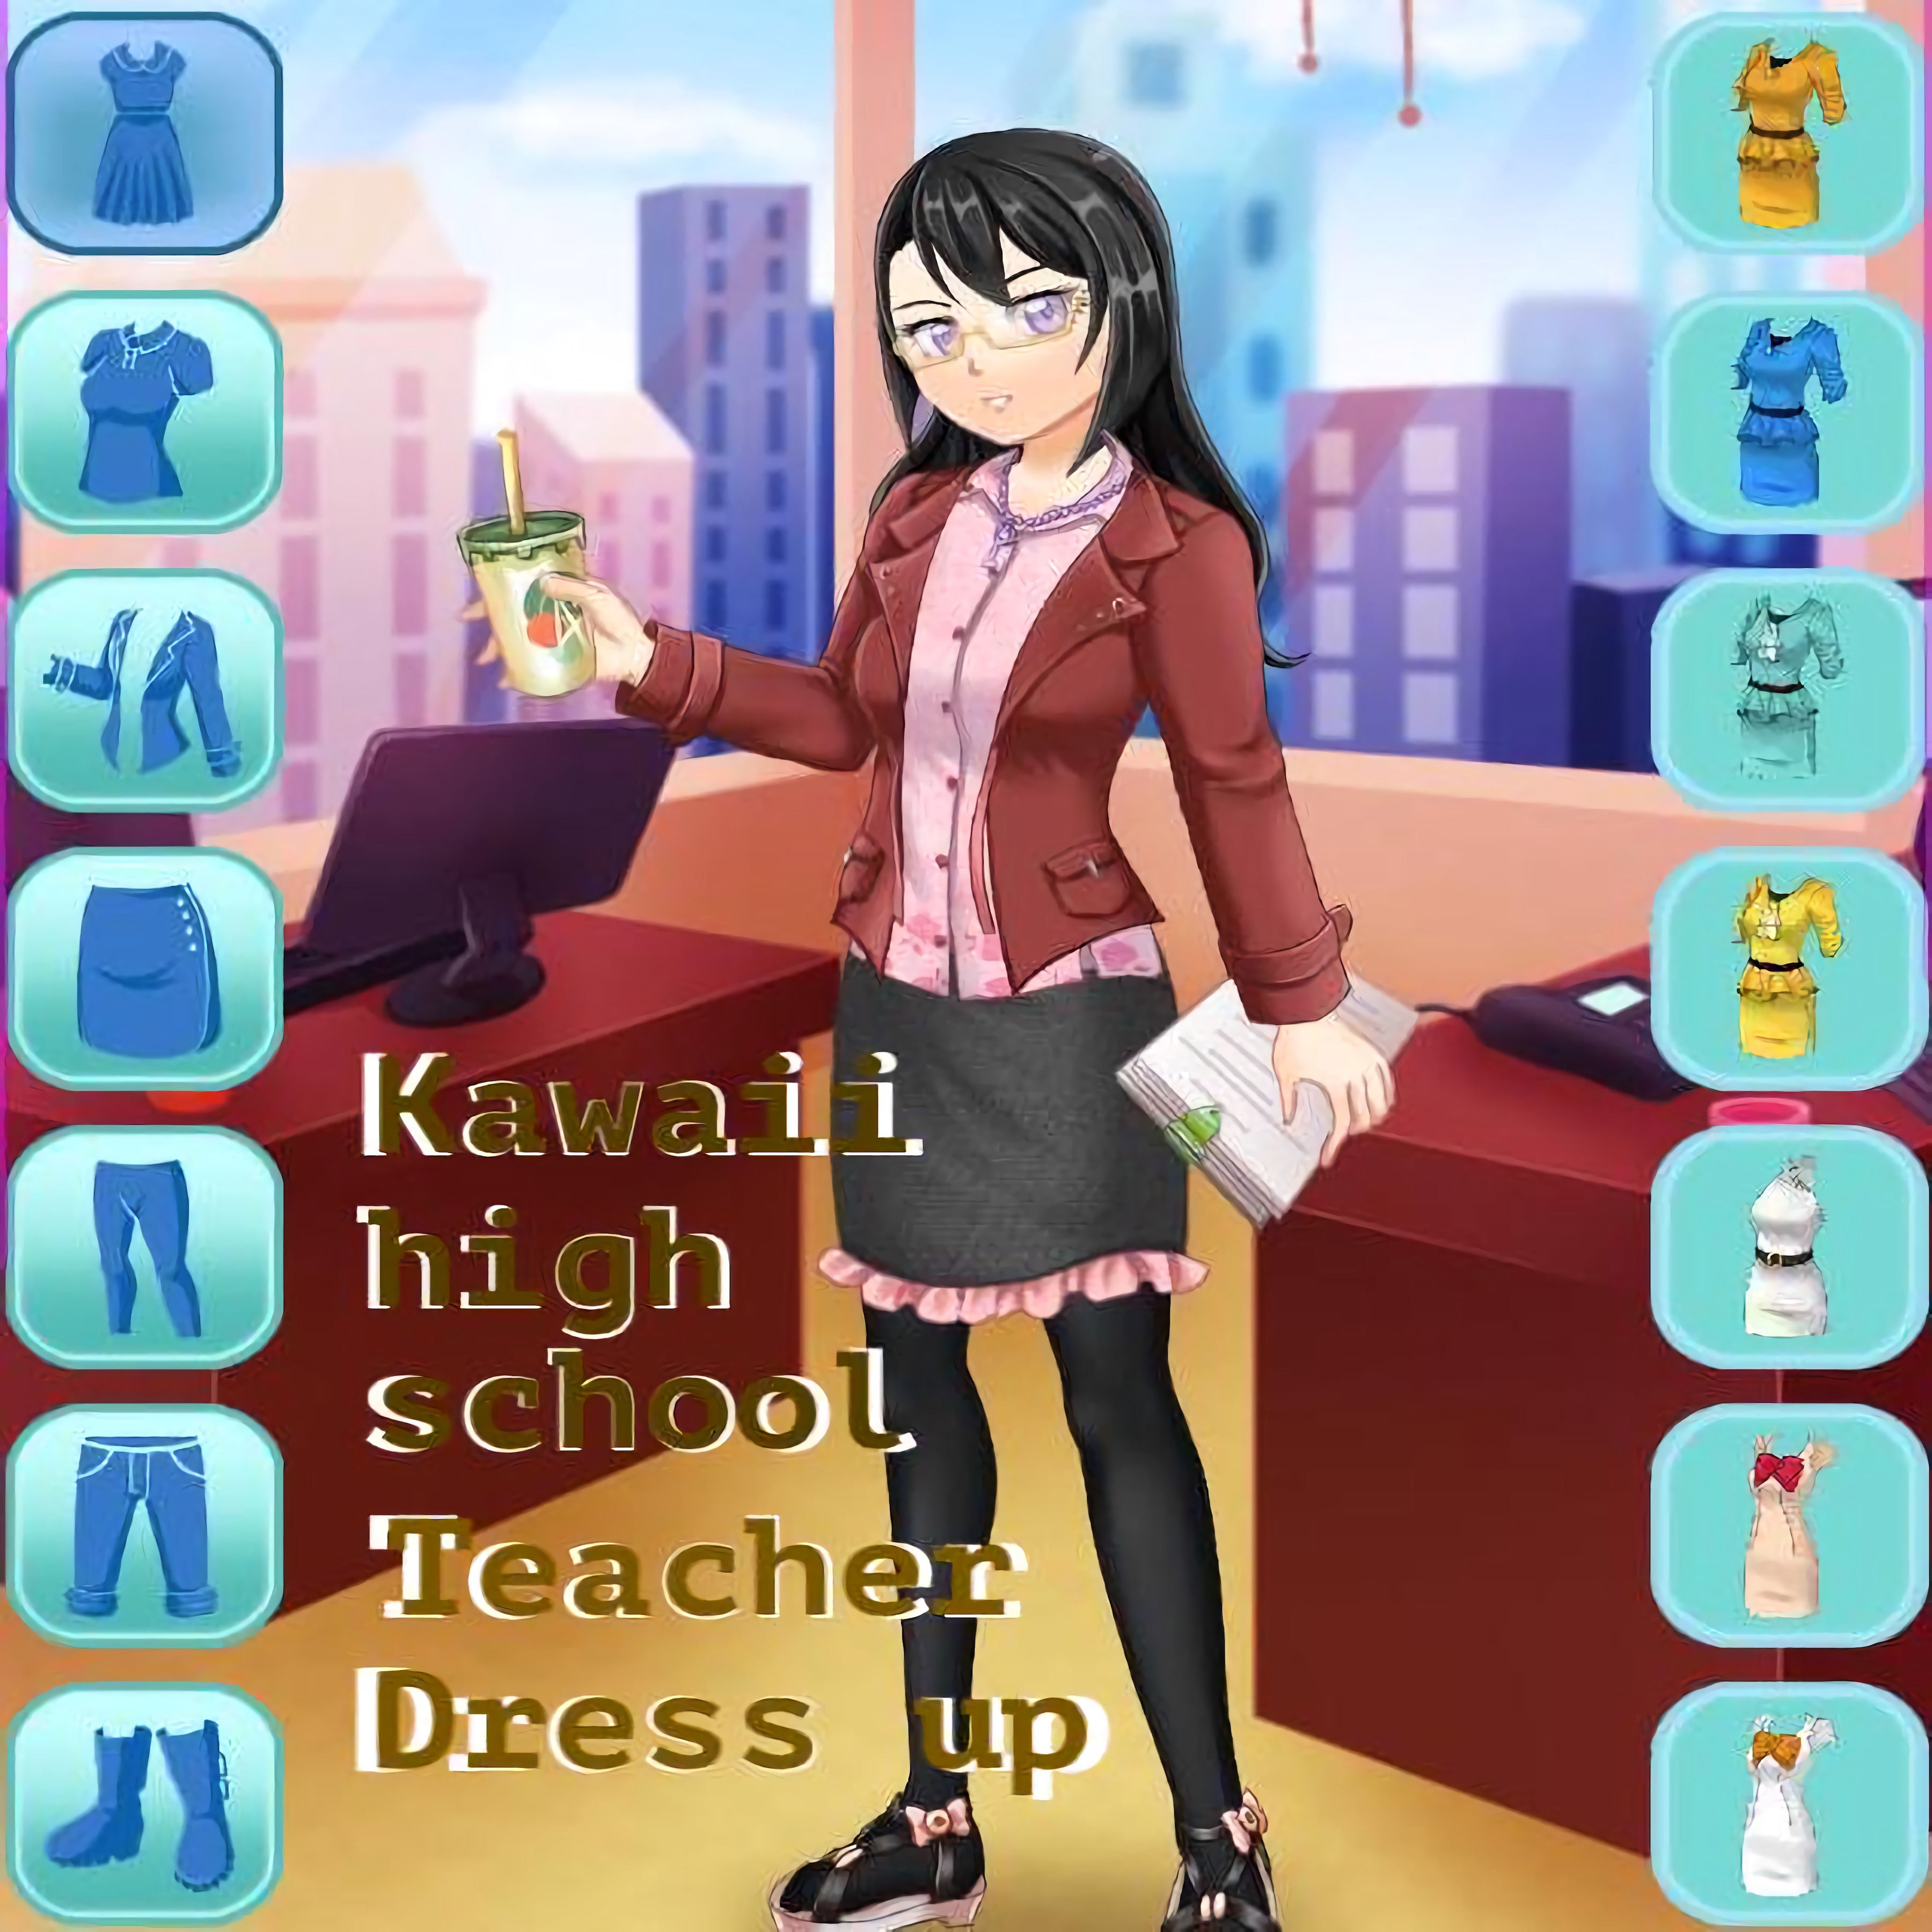 Kawaii High School Teacher Dress Up game play at 